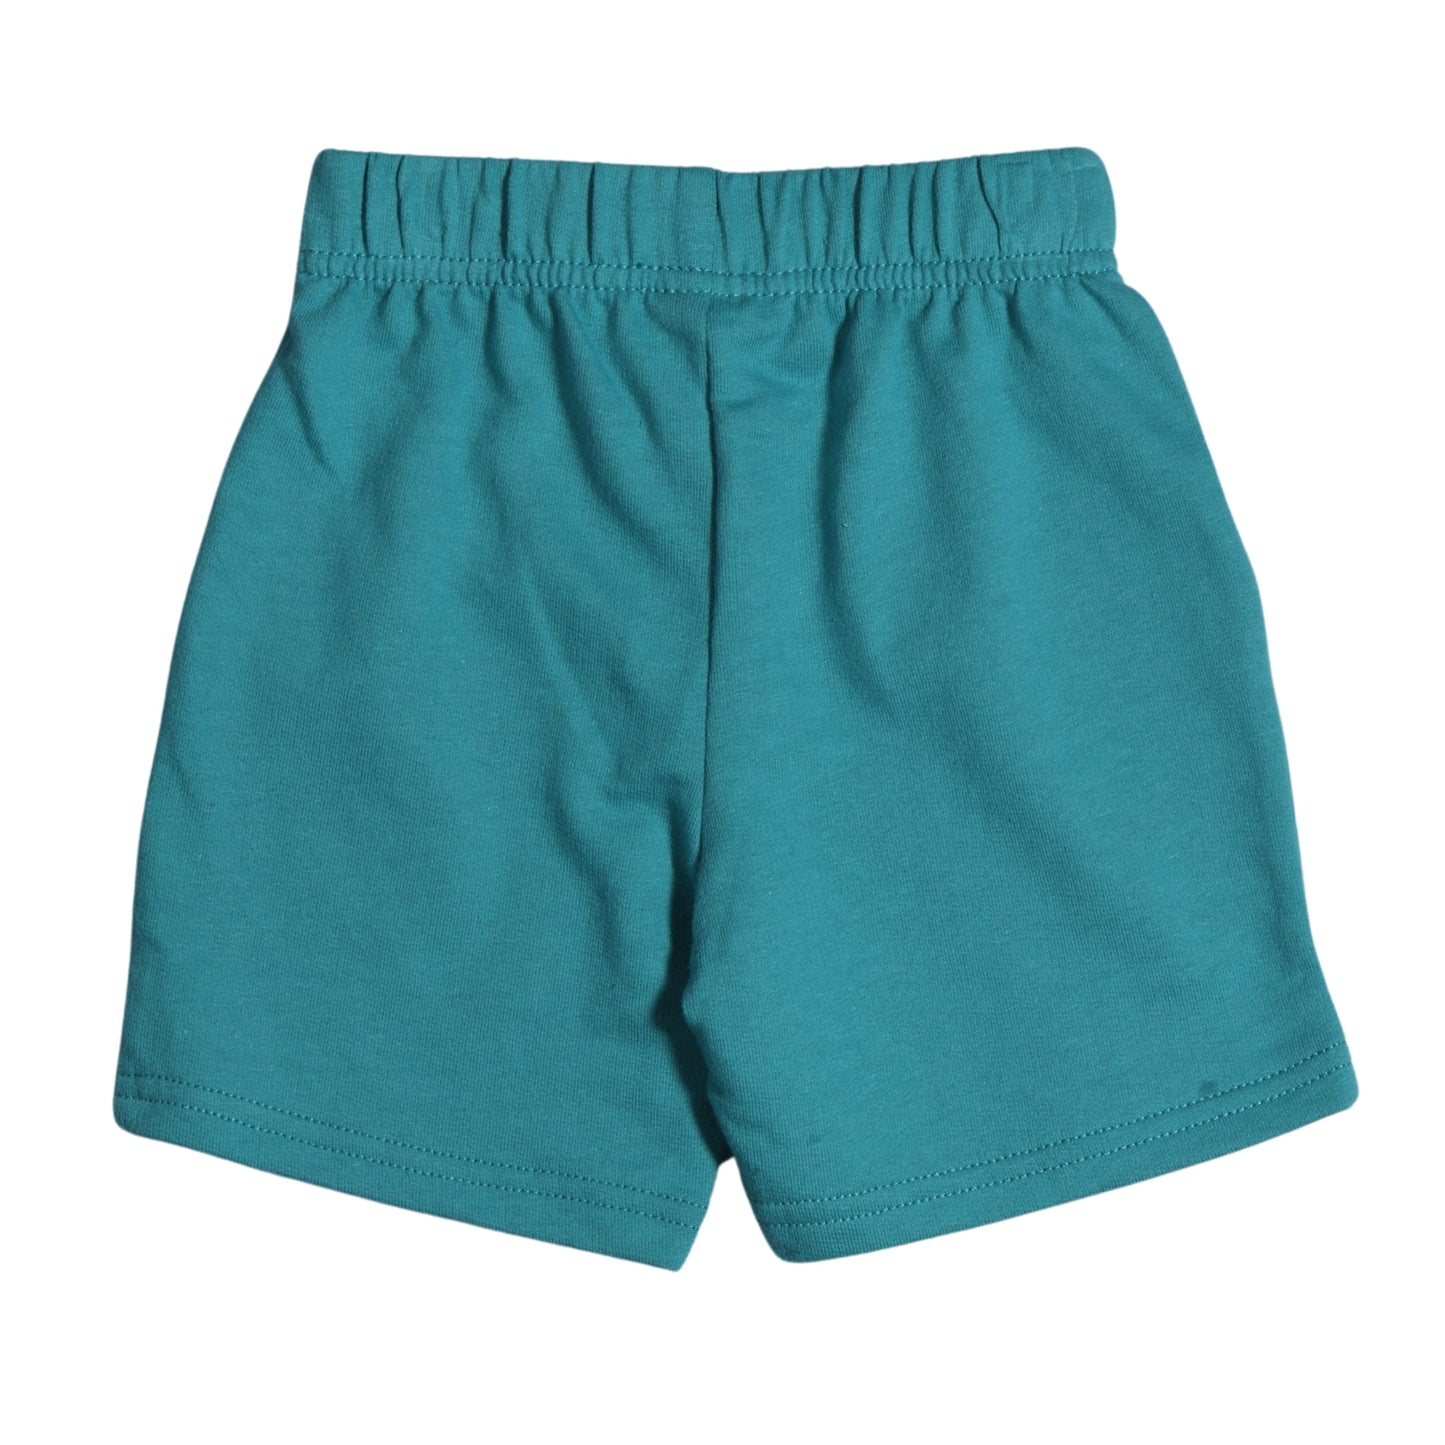 CARTER'S Baby Boy CARTER'S - Baby - Casual Cotton Shorts